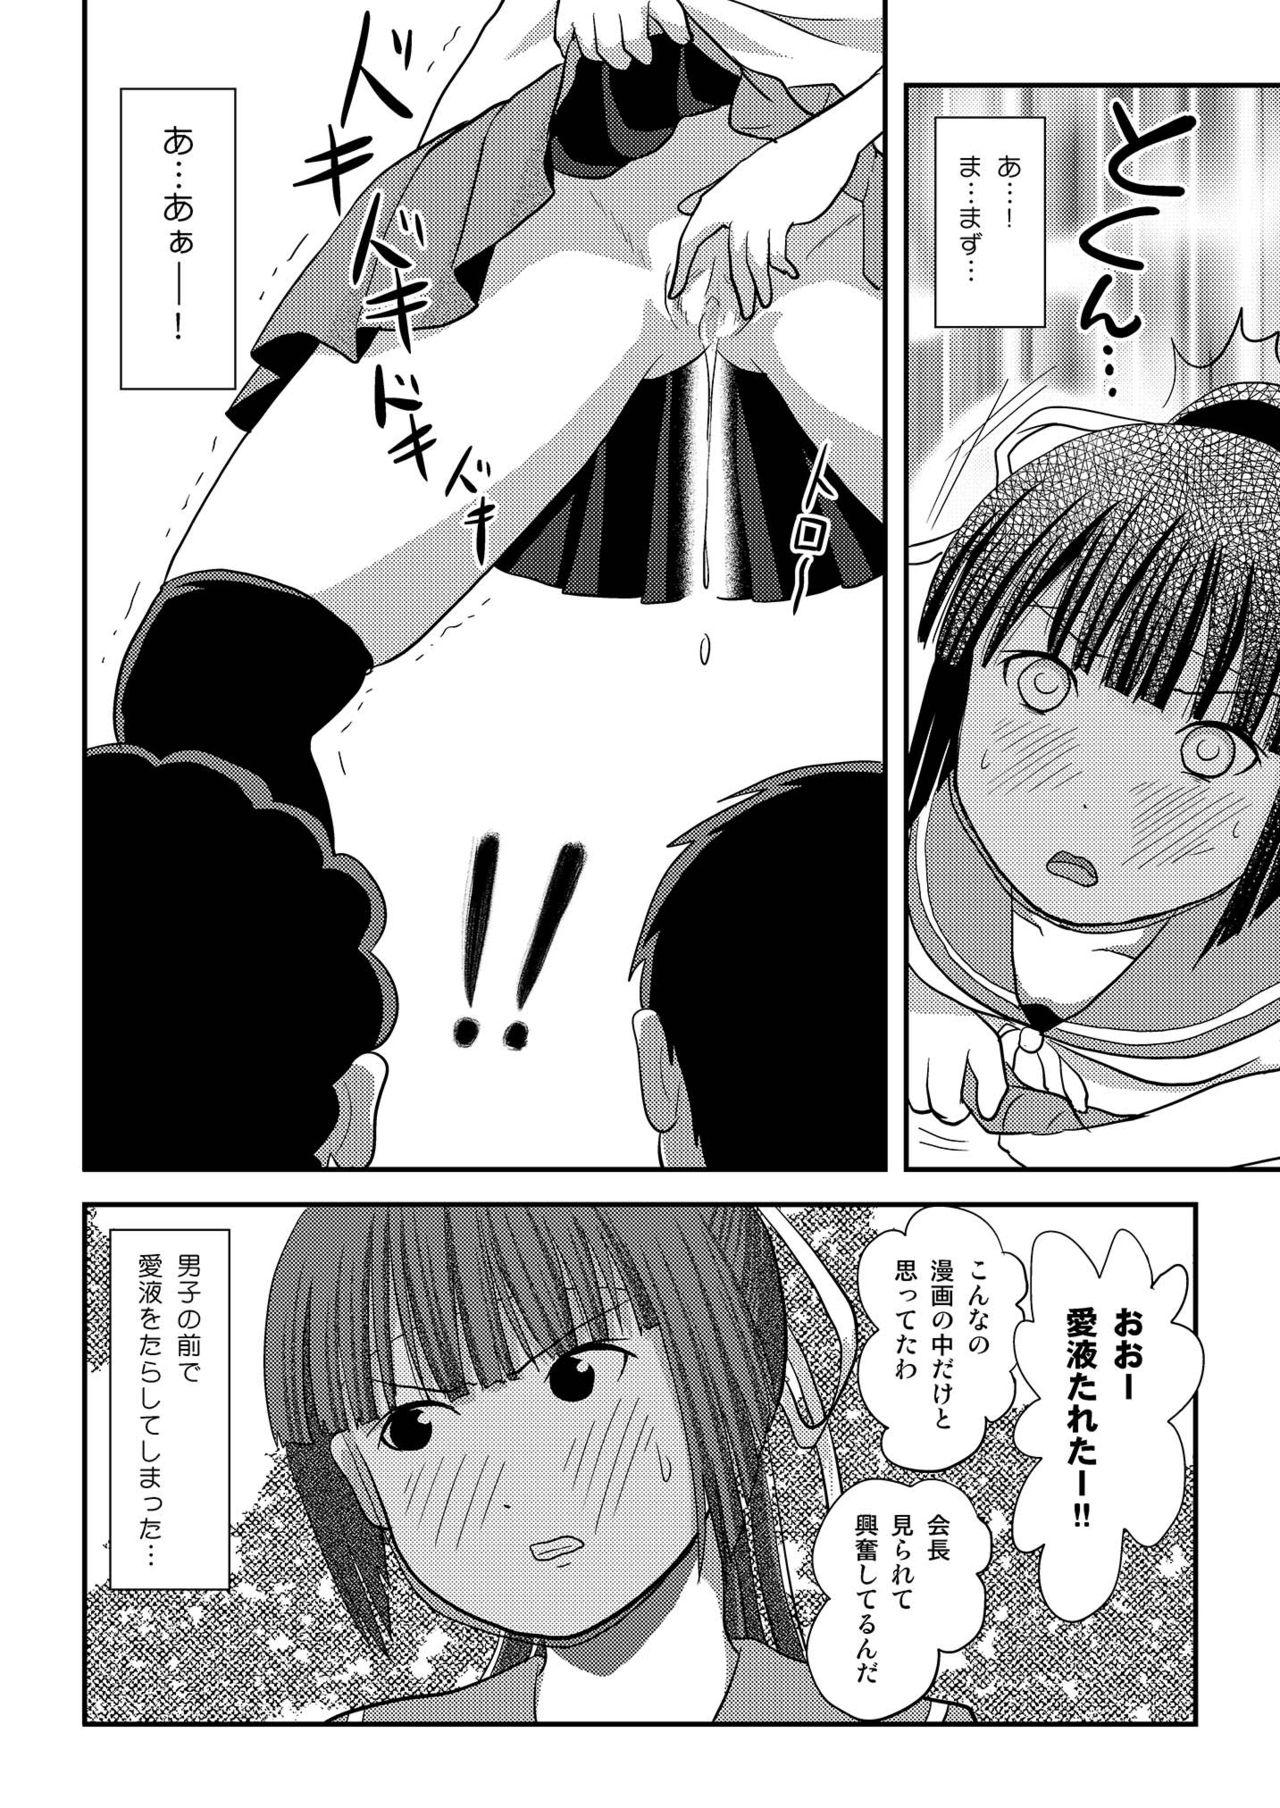 Young Tits Sakura Kotaka no Roshutsubiyori 7 - Original Hand - Page 8